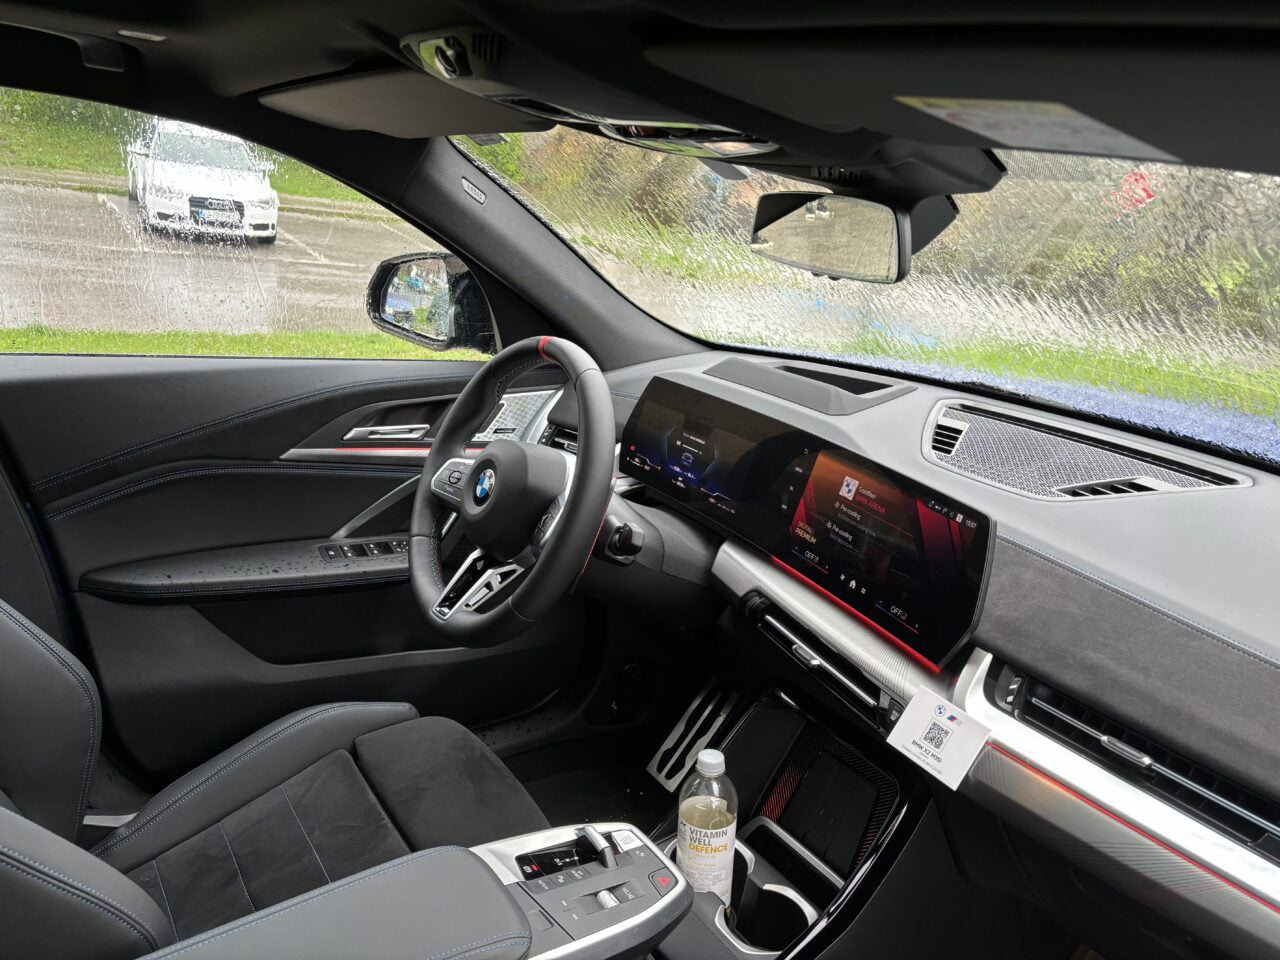 Wnętrze samochodu BMW z czarnymi skórzanymi siedzeniami, kierownicą z logotypem marki, cyfrowymi zegarami i ekranem dotykowym w centralnej części deski rozdzielczej.